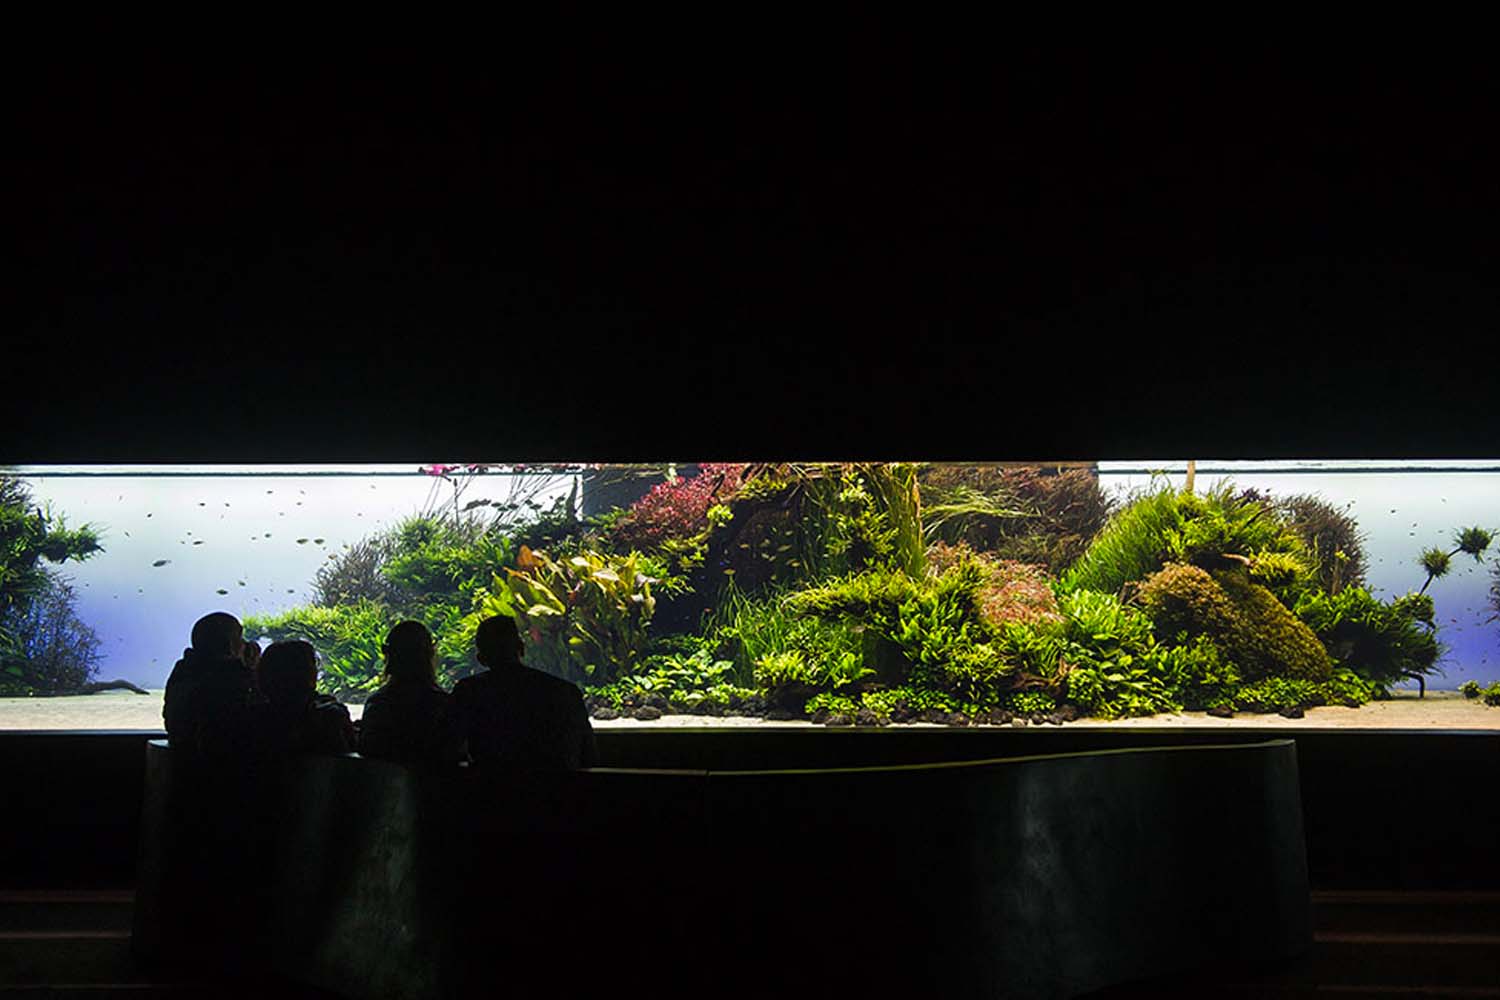 Forests Underwater Exhibition